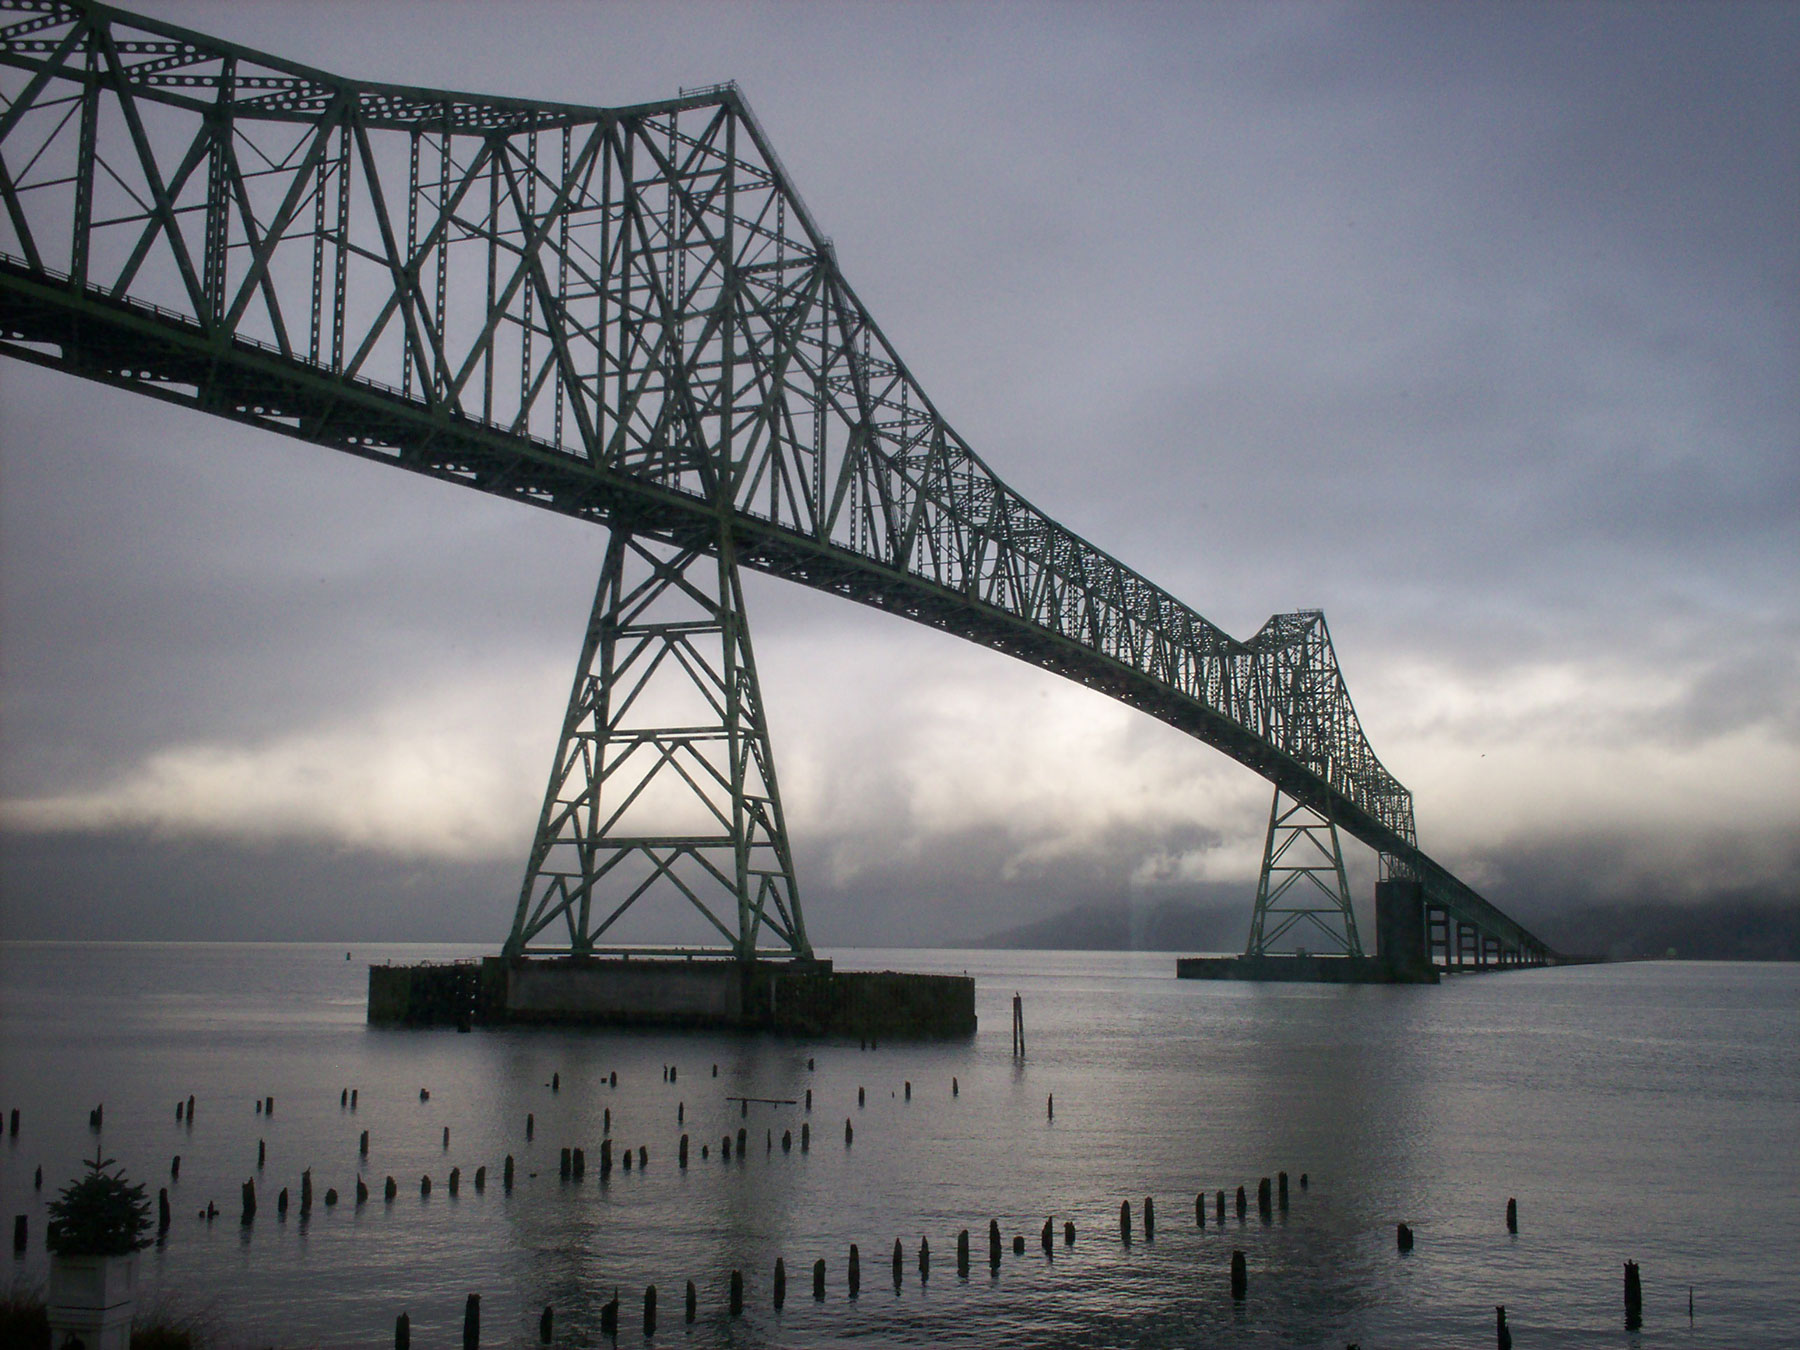 Yli kuusi kilometriä pitkä Astorian silta ylittää Columbia-joen ja vie samalla Washingtonista Oregoniin. (c) thirteenthbat/Flickr.com, CC 2.0